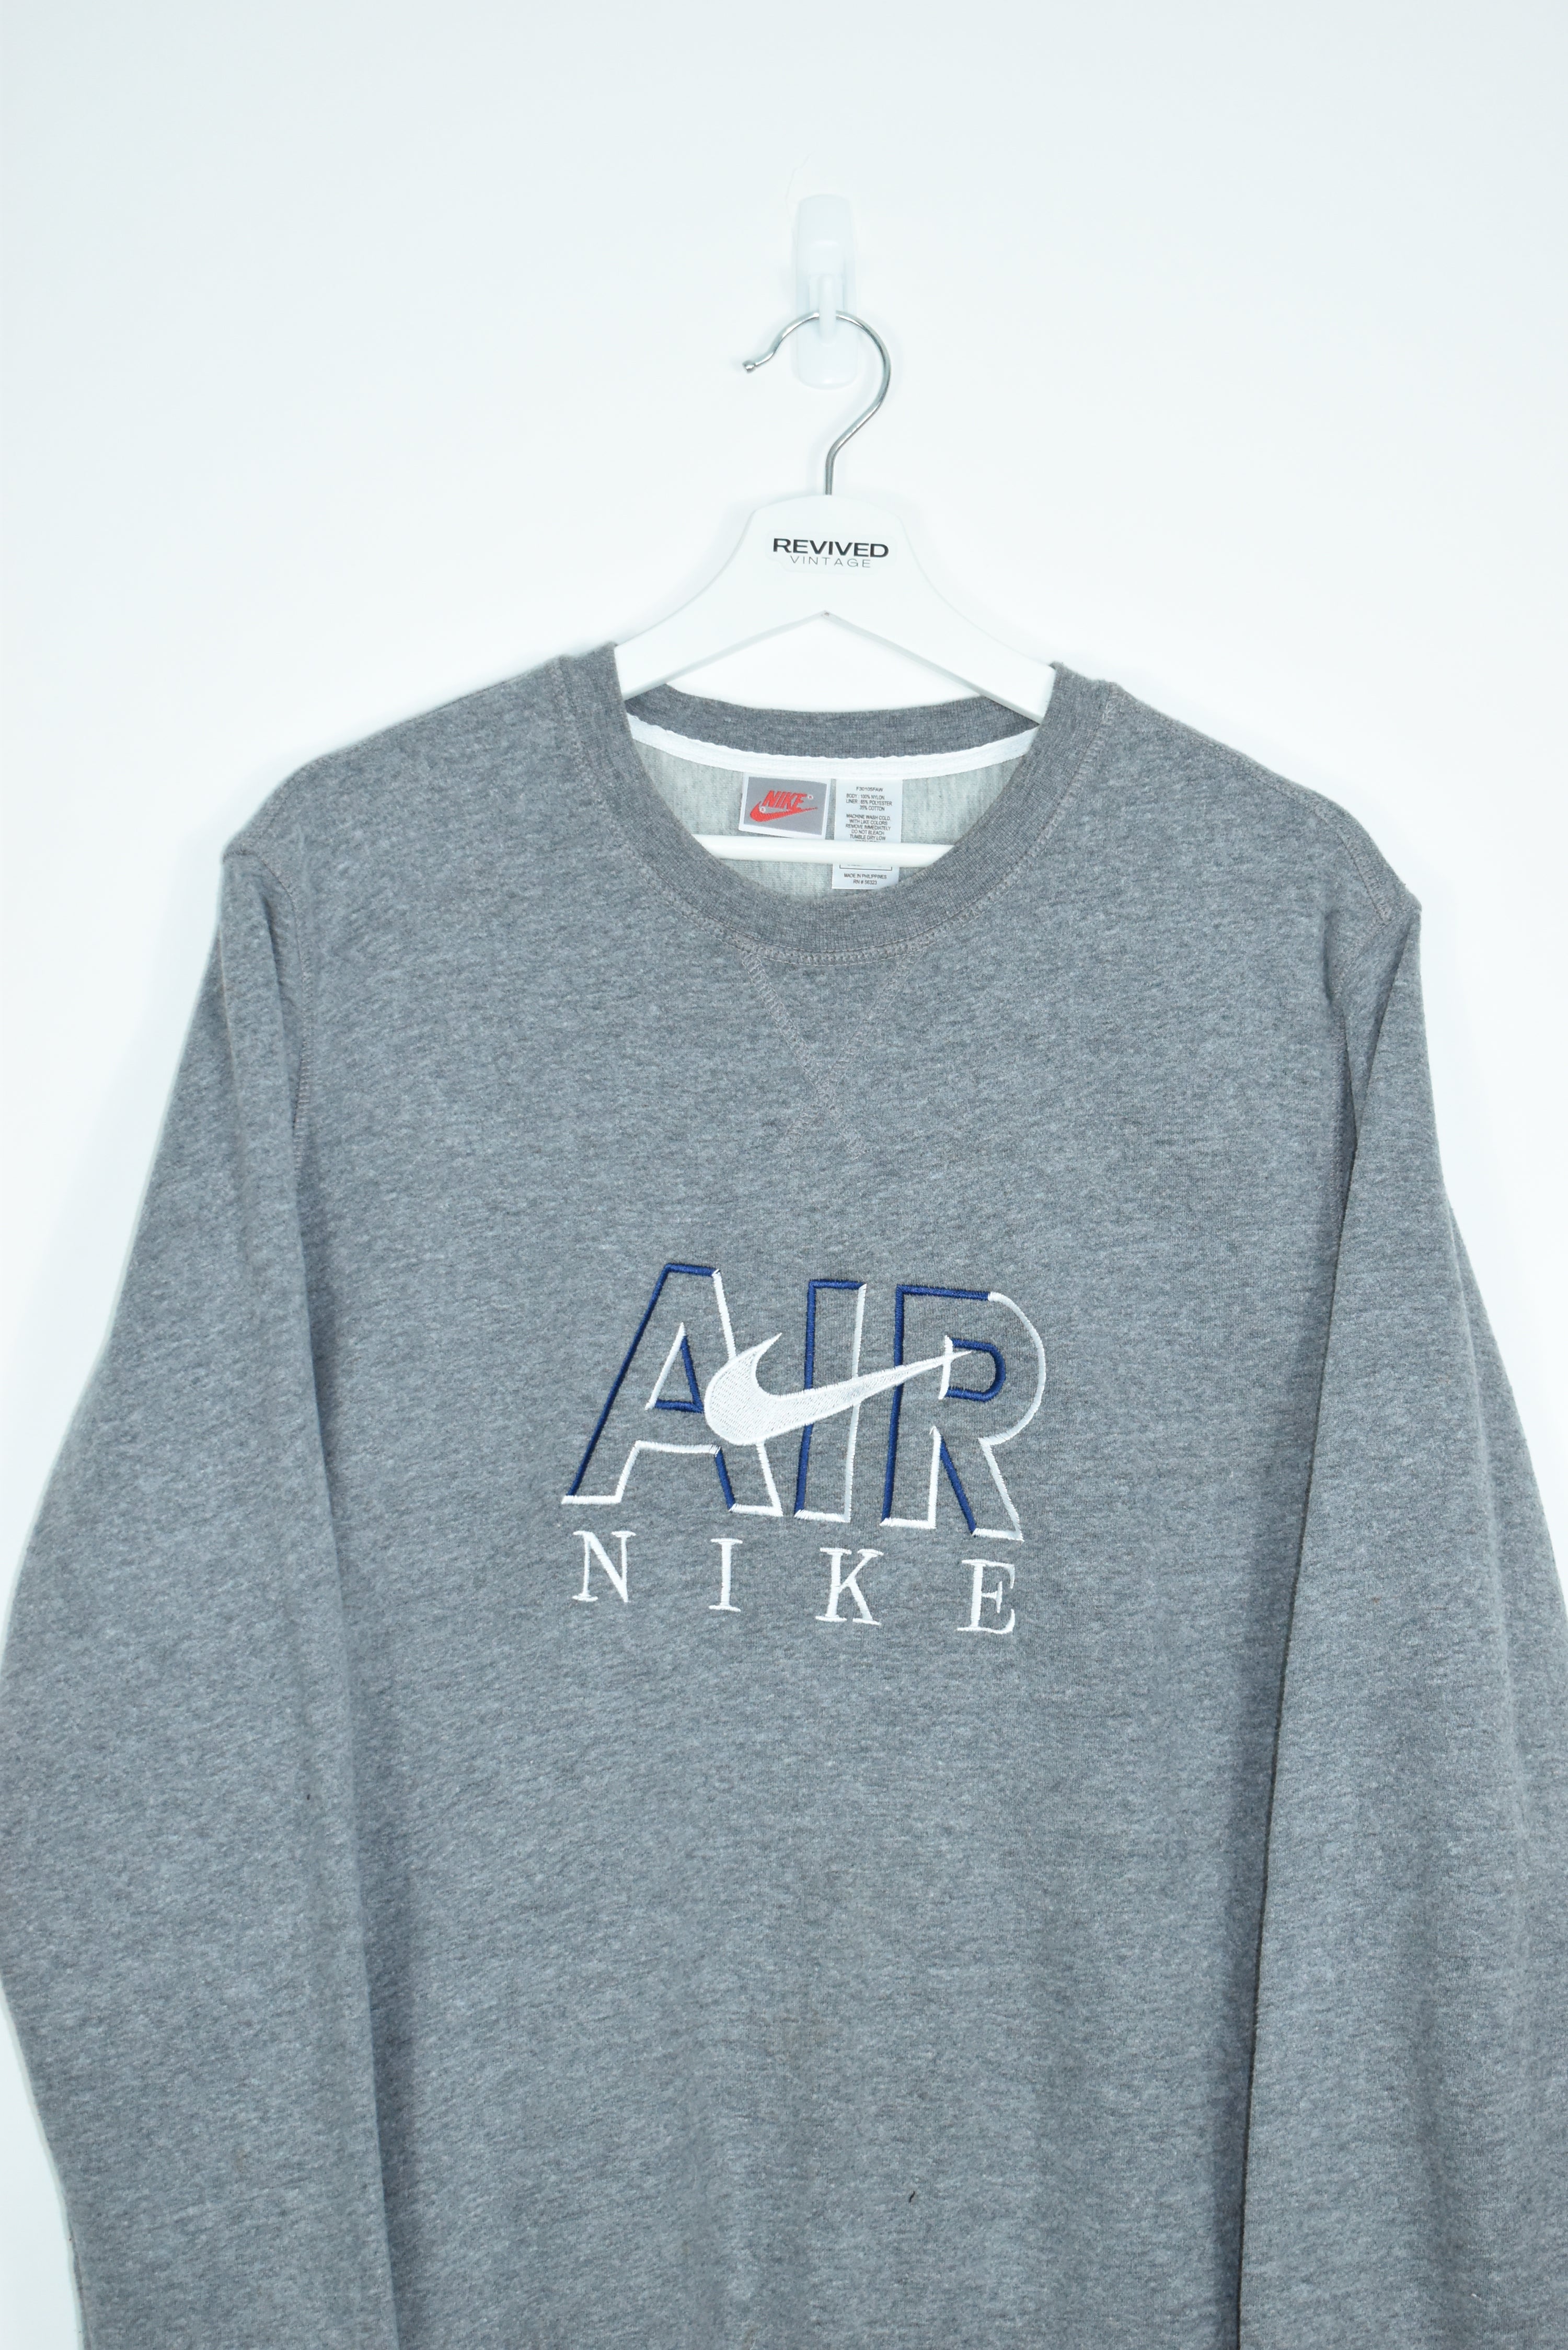 Vintage Nike Air Embroidery Bootleg Sweatshirt Grey Large